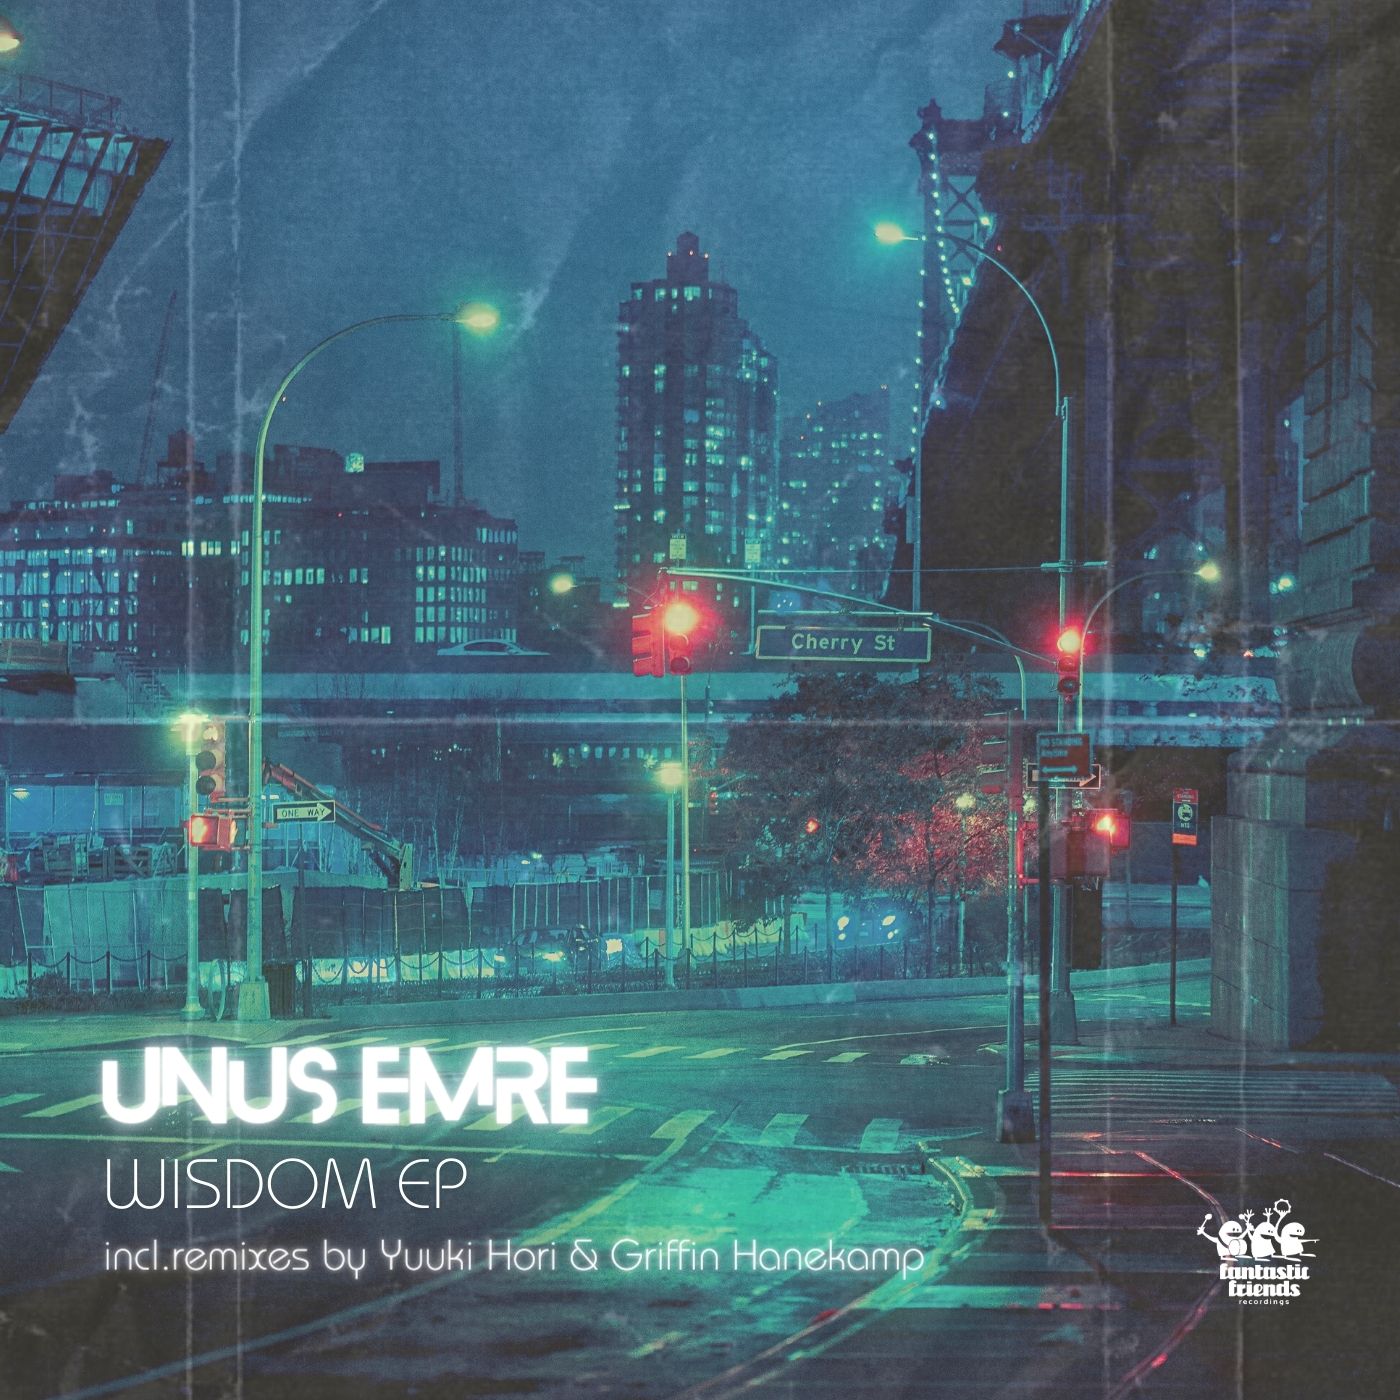 Unus Emre - Wisdom EP Incl. Yuuki Hori & Griffin Hanekamp Remixes